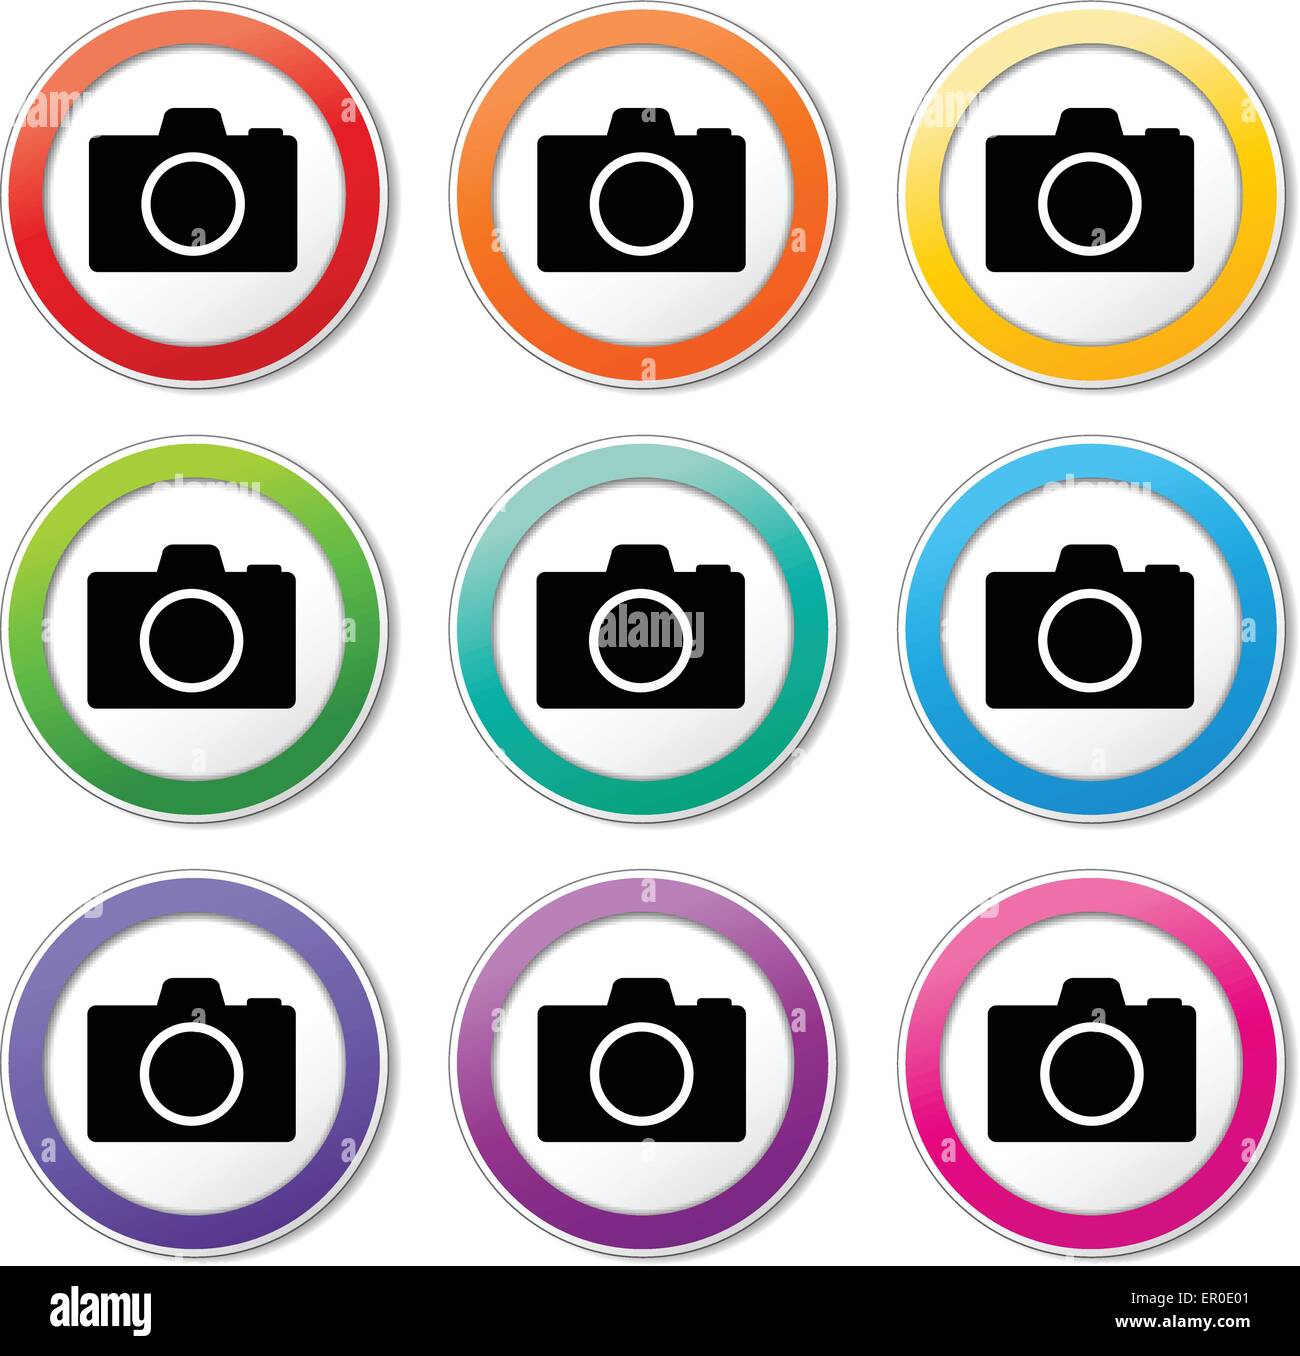 Illustrazione delle icone della telecamera vari colori impostati Illustrazione Vettoriale